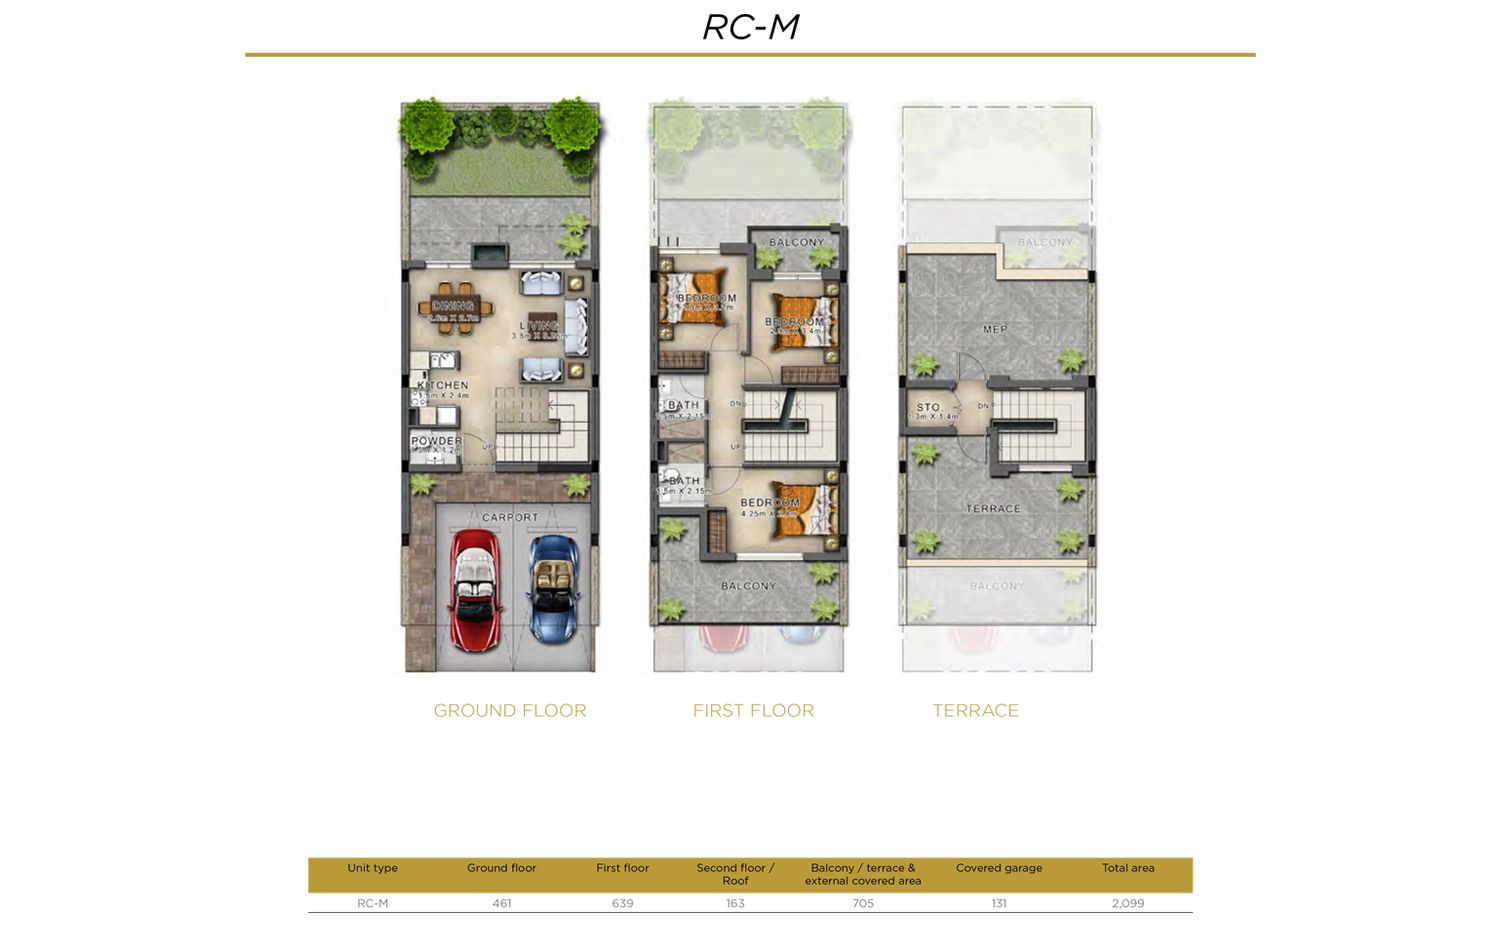 3 BR RC-M    3 Bedroom Villa, Size 2099    sq. ft.